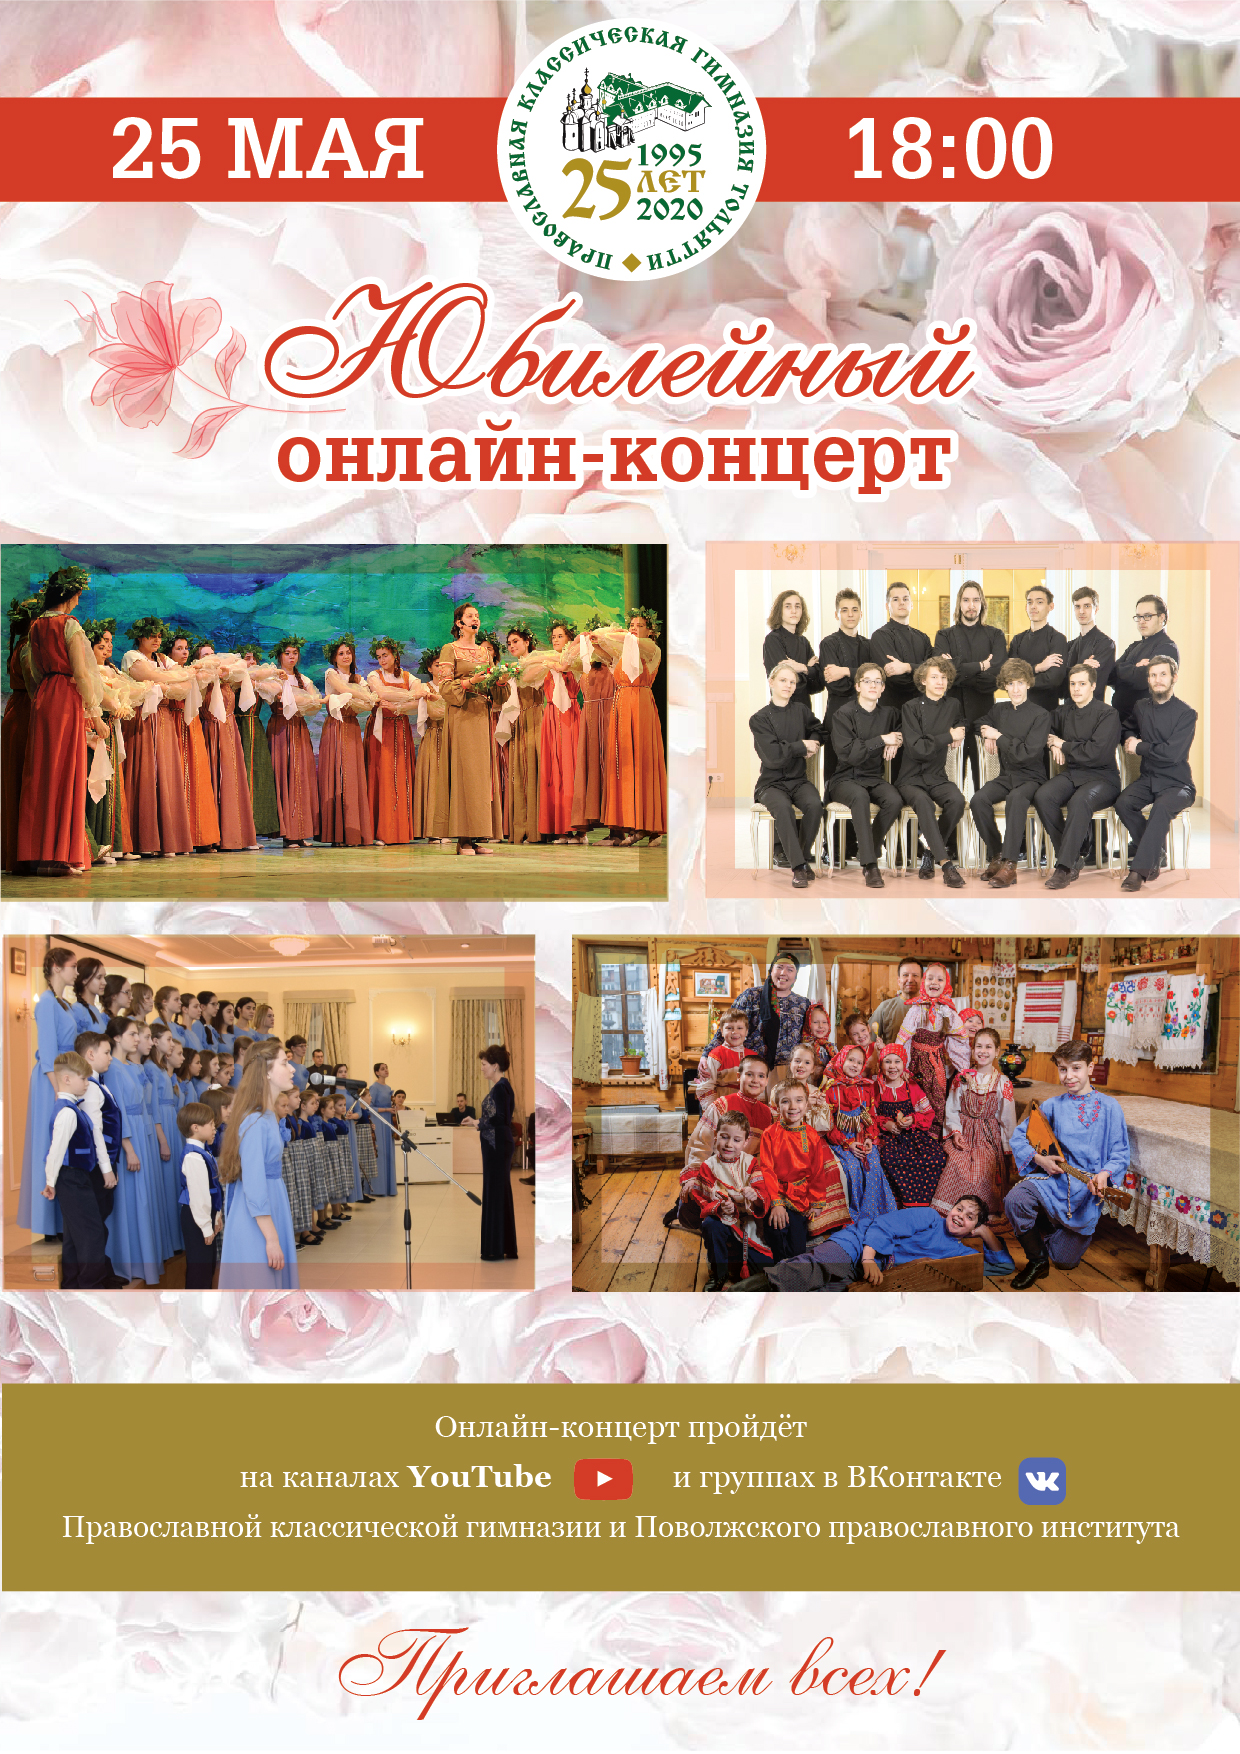 Приглашаем на онлайн-концерт, посвященный 25-летию православной классической гимназии